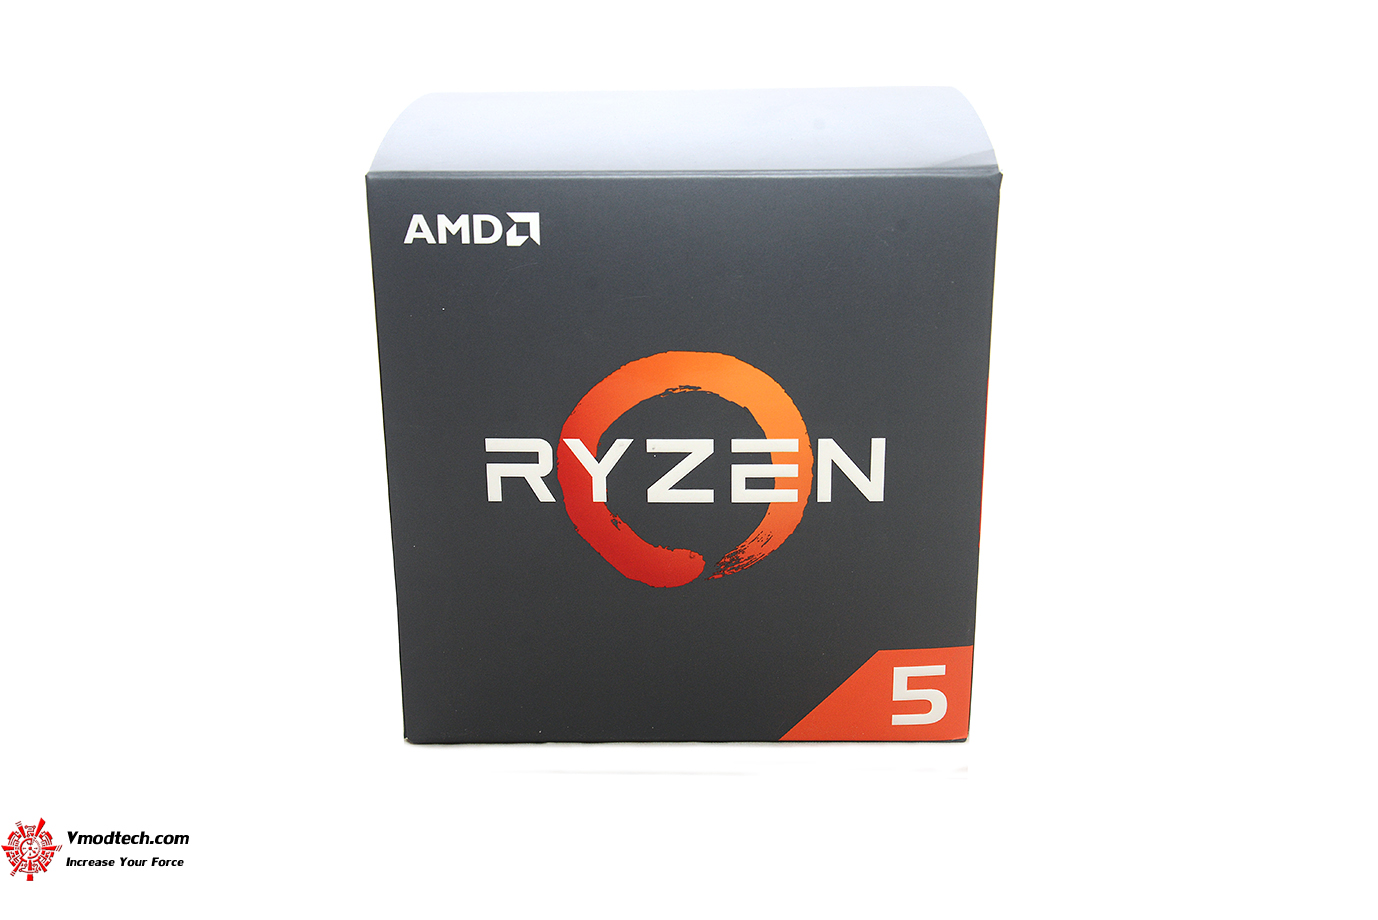 dsc 1785 AMD RYZEN 5 2600X PROCESSOR REVIEW